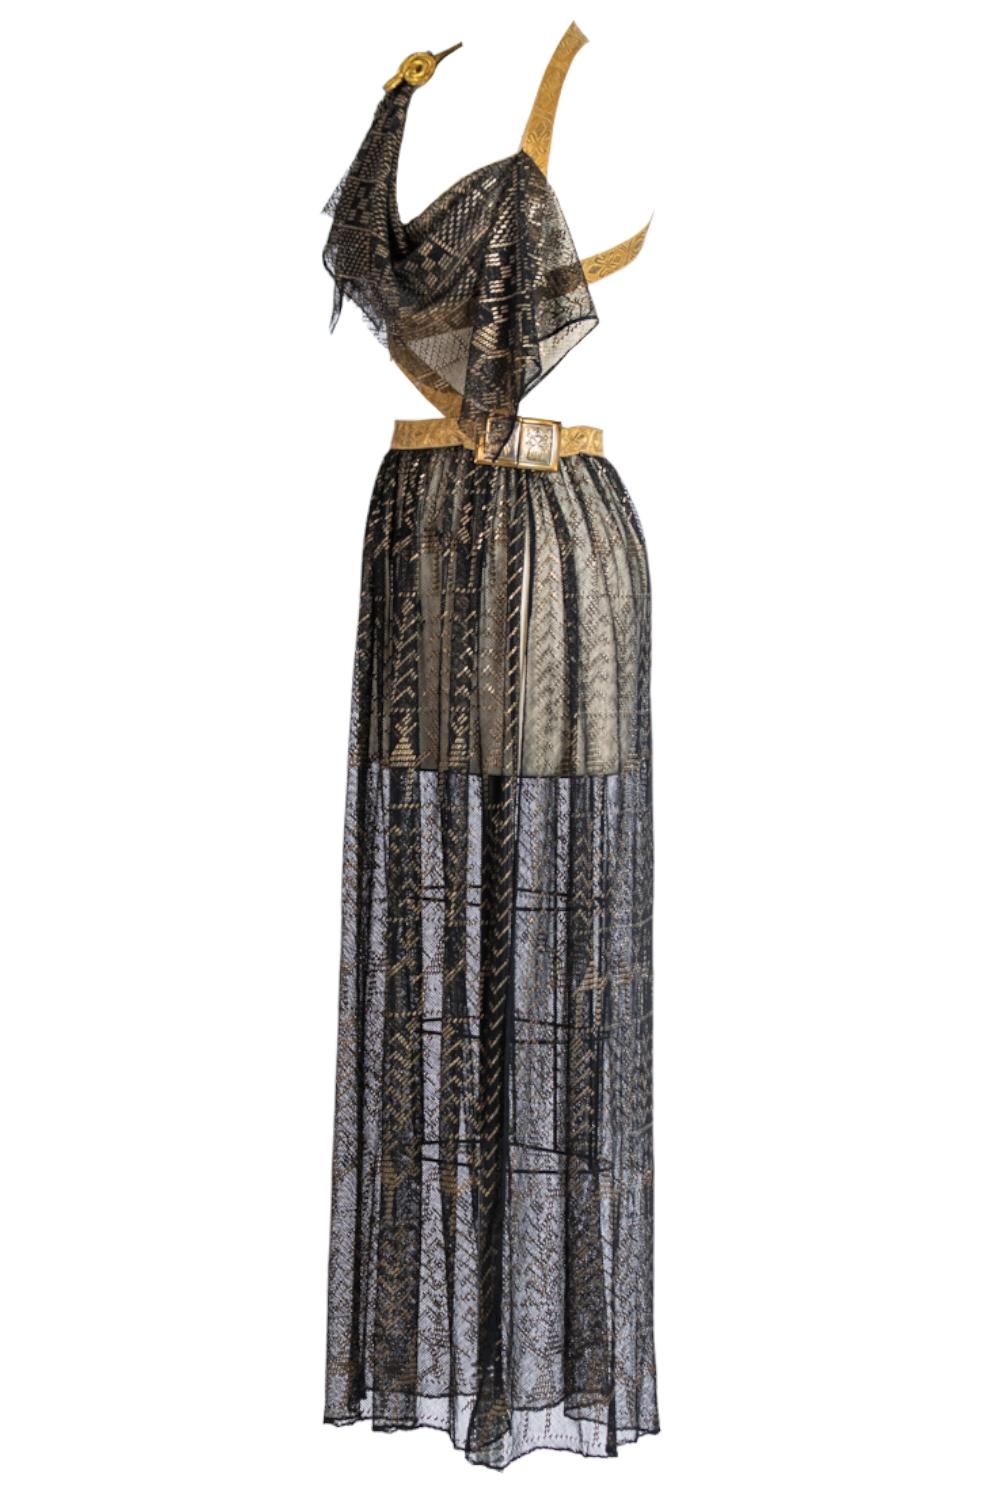 Les textiles utilisés pour la confection de cette robe ont 100 ans d'âge et les détails en laiton doré ont pris une belle patine d'ancienneté. Morphew ATELIER Robe d'assuit égyptienne ancienne en filet de coton noir et or avec épaulette militaire en